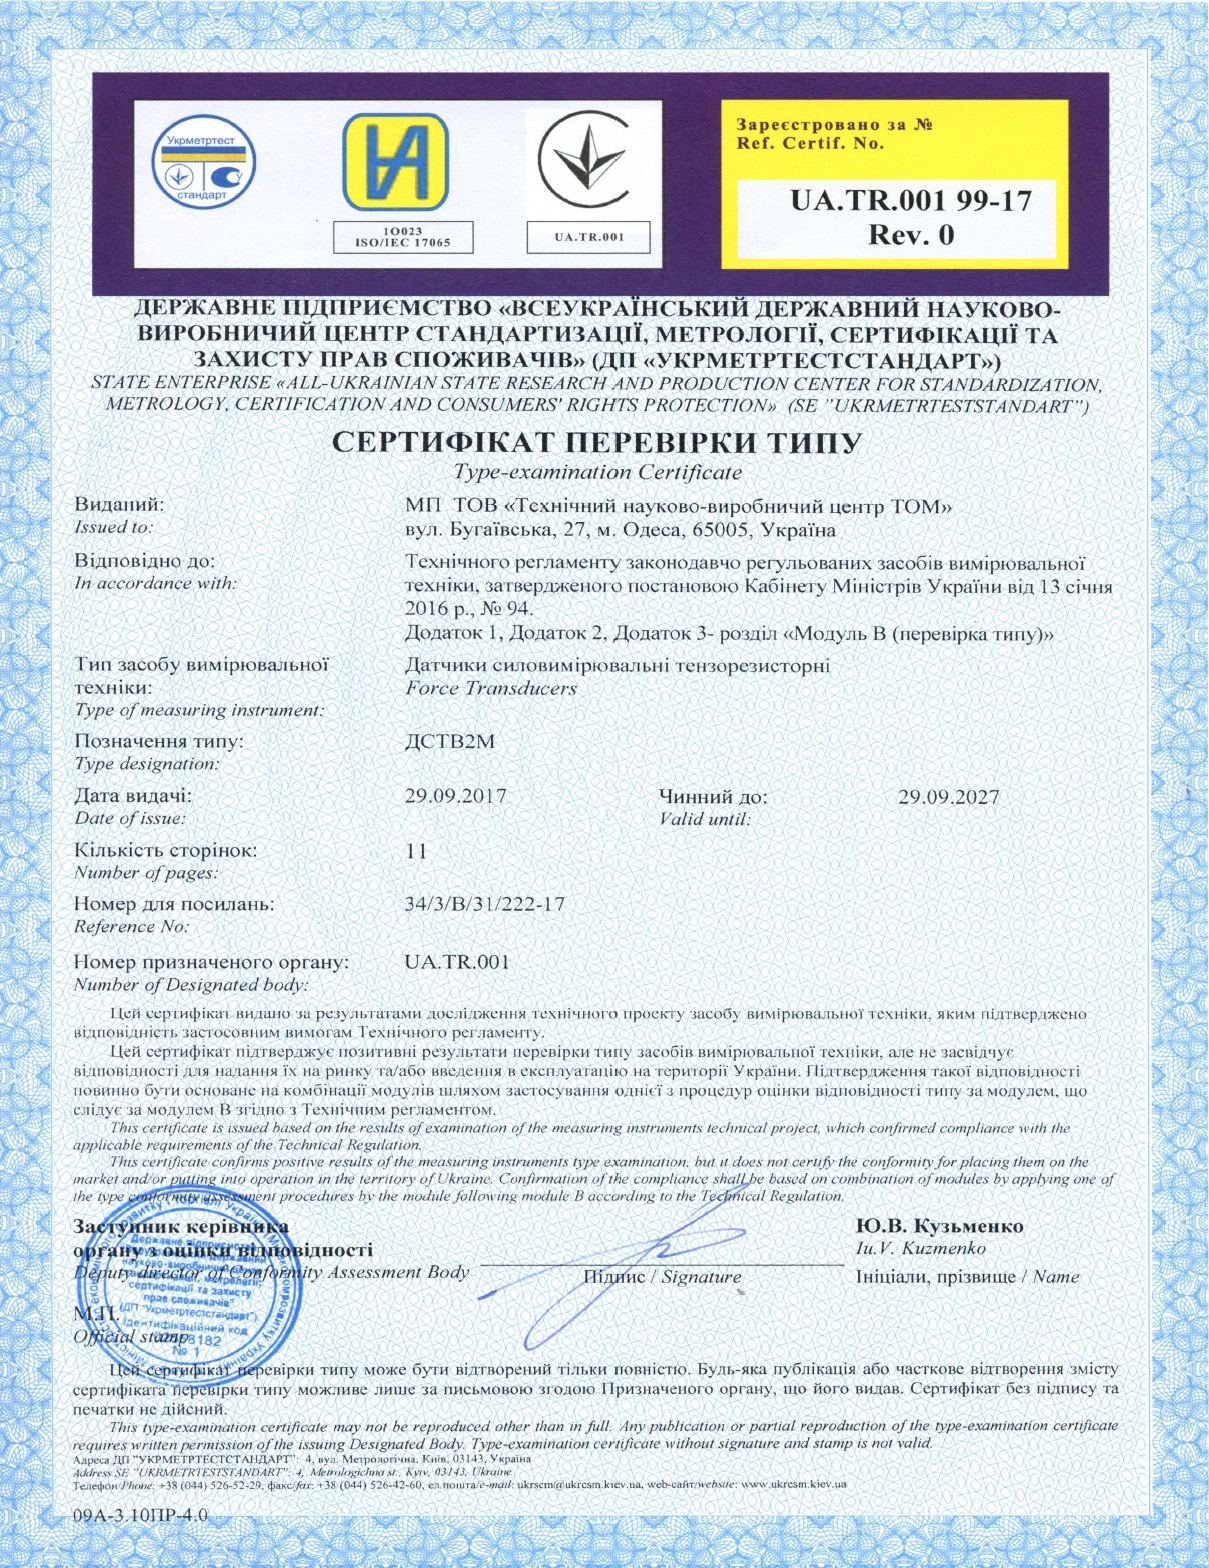 Сертификат проверки типа <br> датчики силоизмерительные тензорезисторные типа ДСТВ2М 